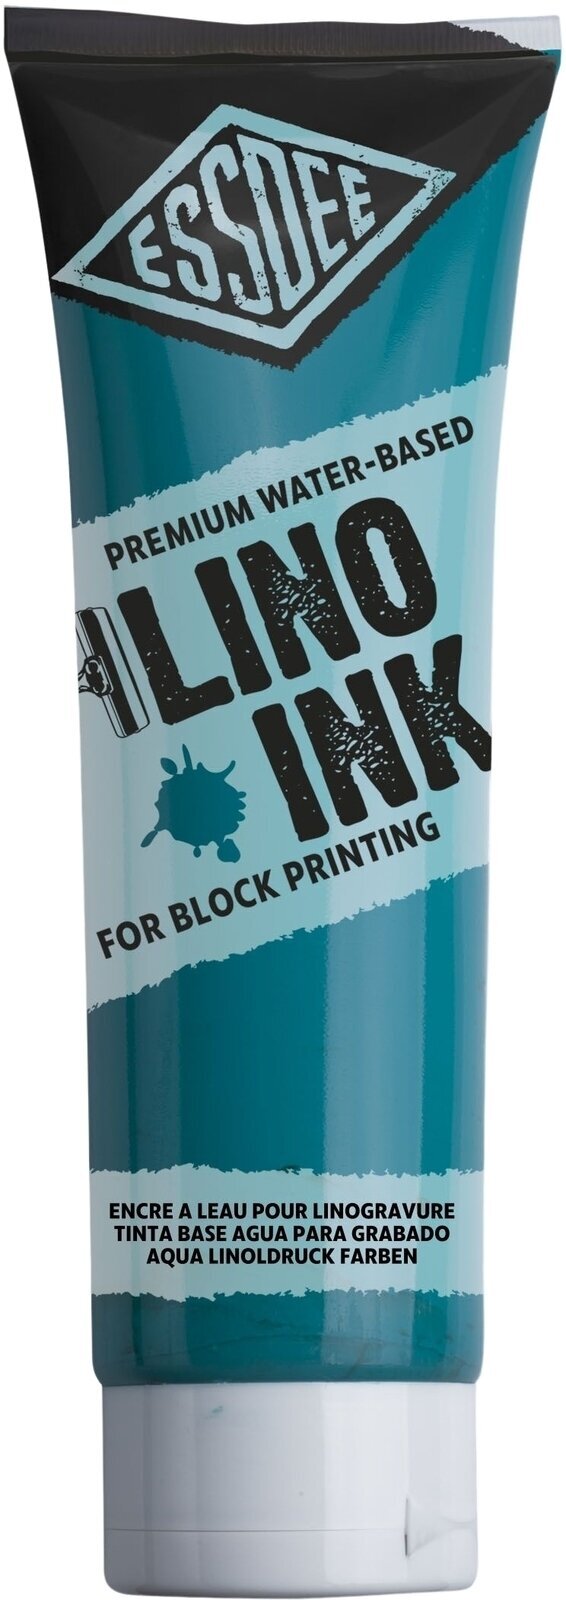 Tinta para linogravura Essdee Block Printing Ink Tinta para linogravura Turquoise 300 ml